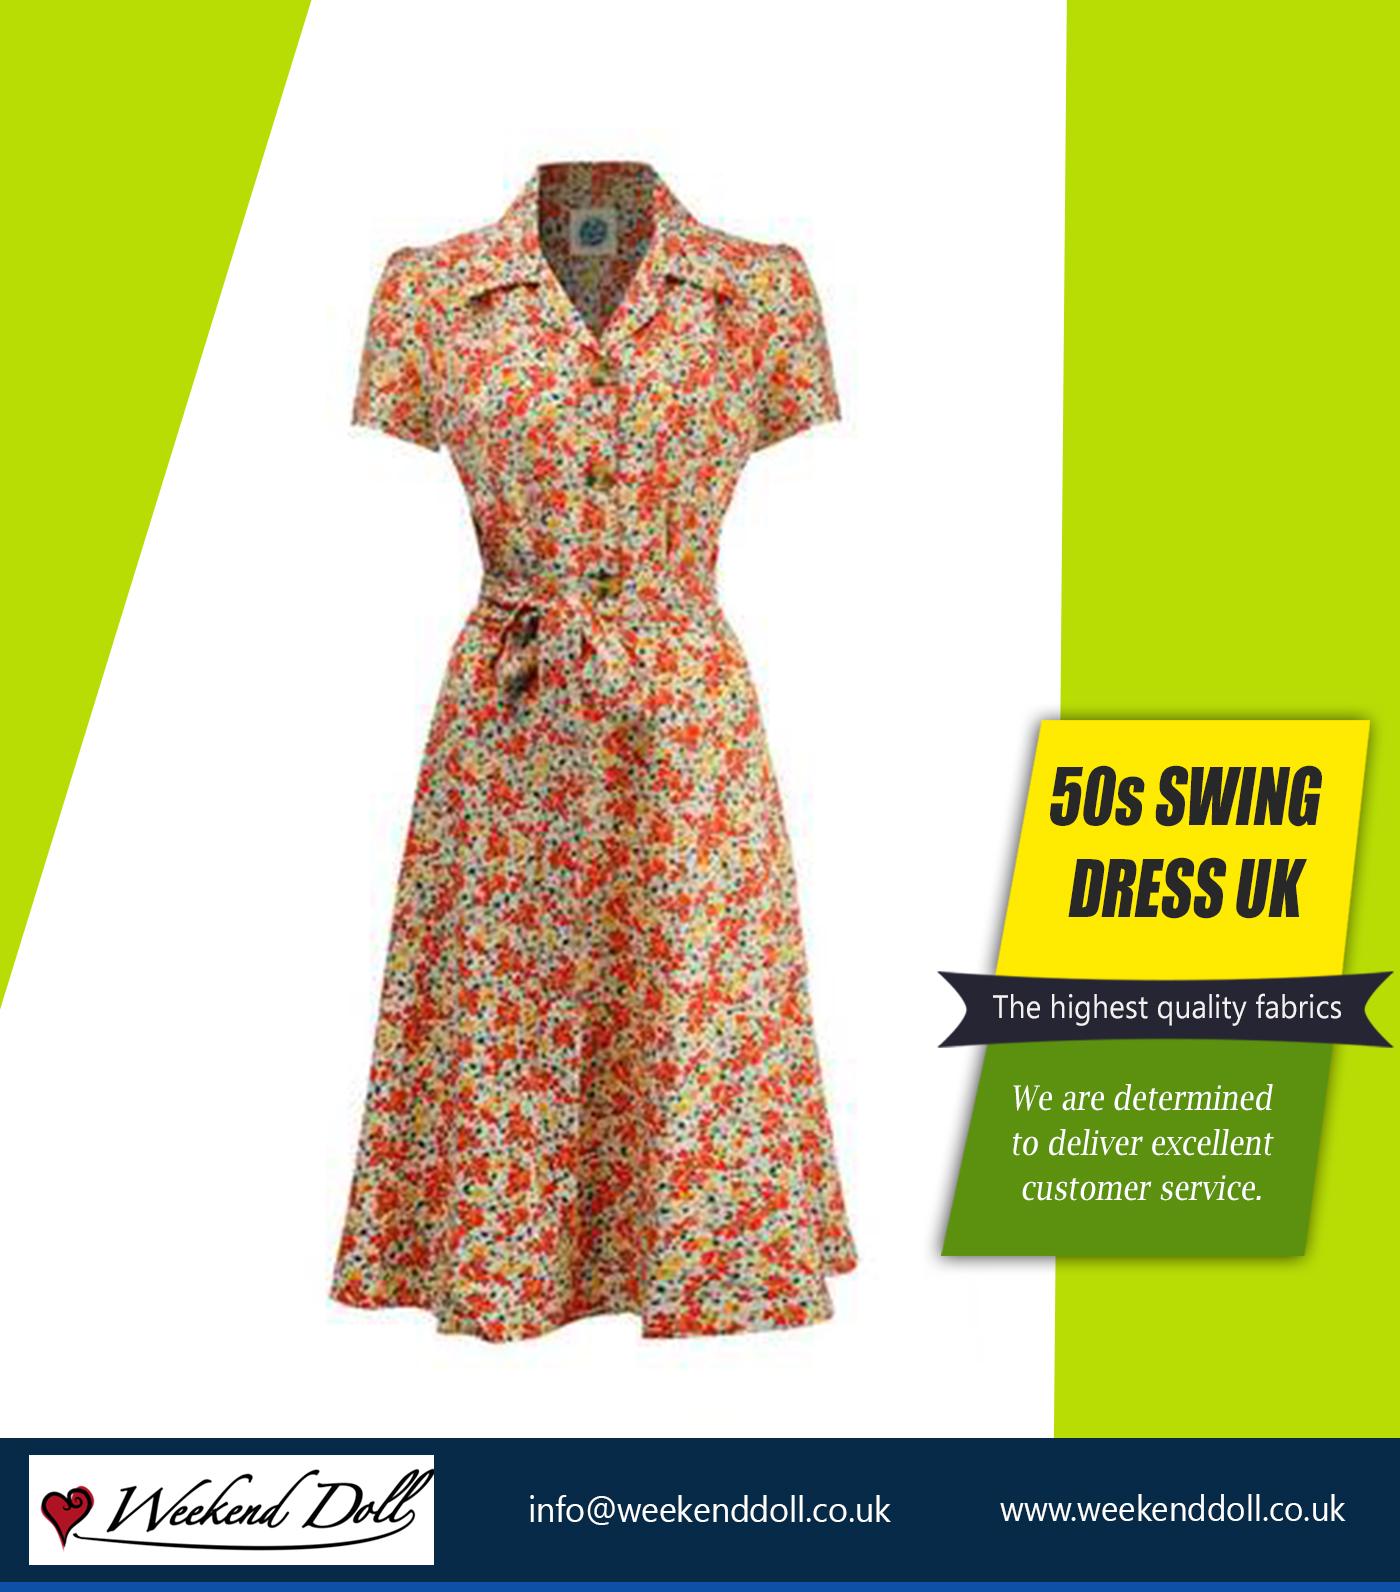 50s Swing Dress UK